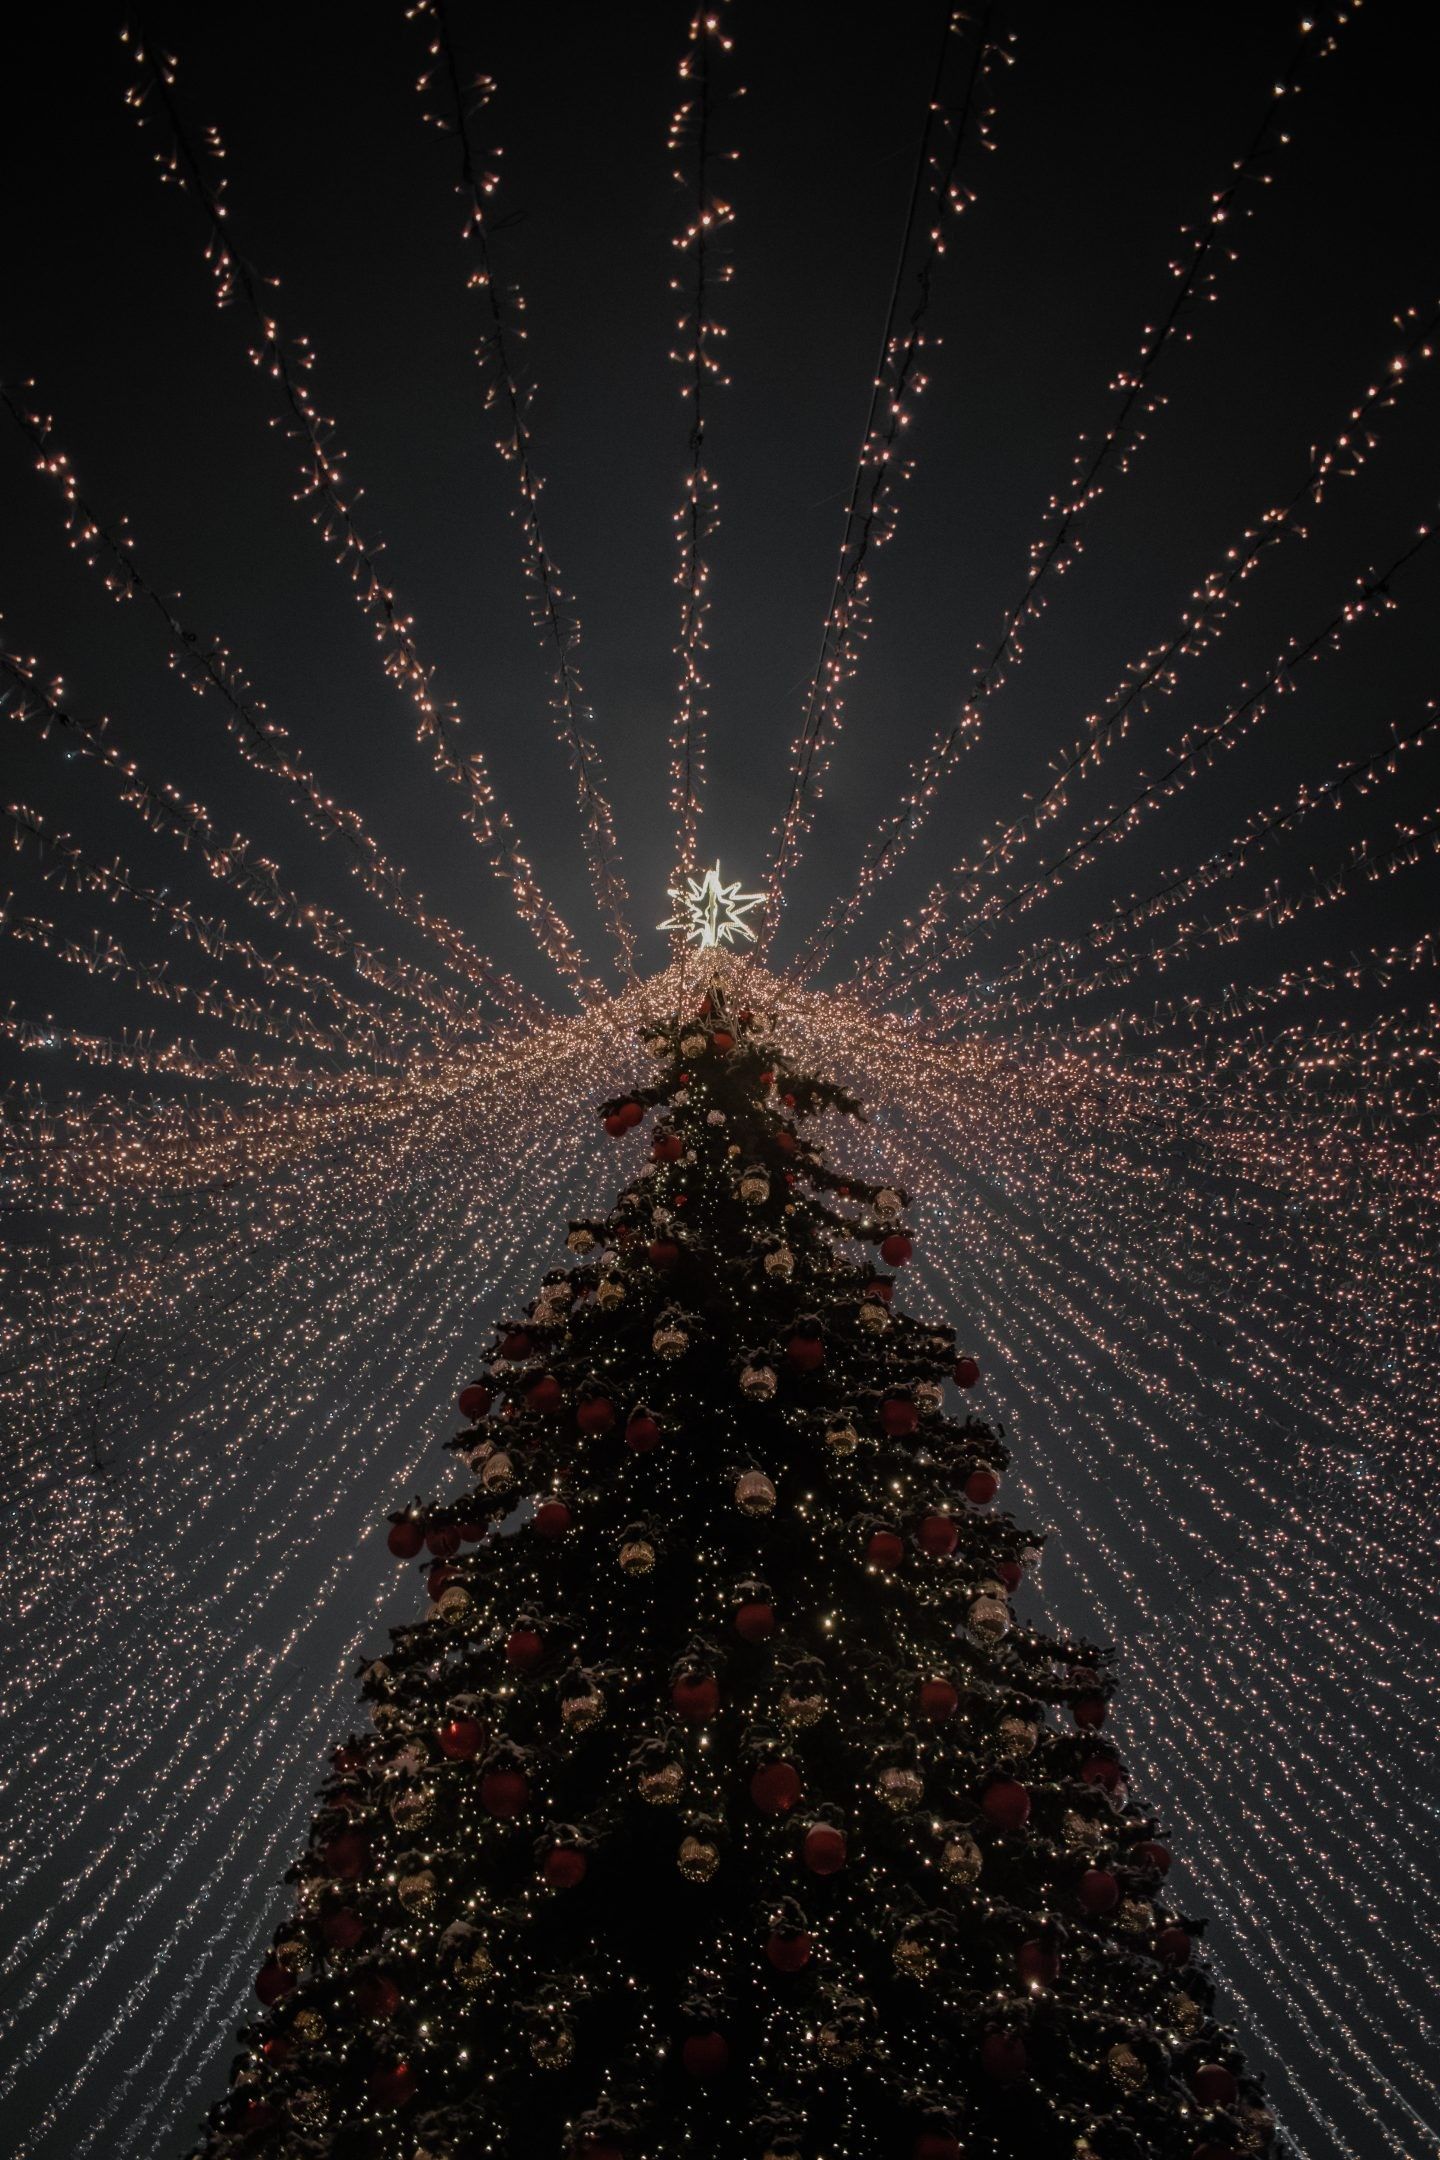 A christmas tree with lights and stars - Christmas lights